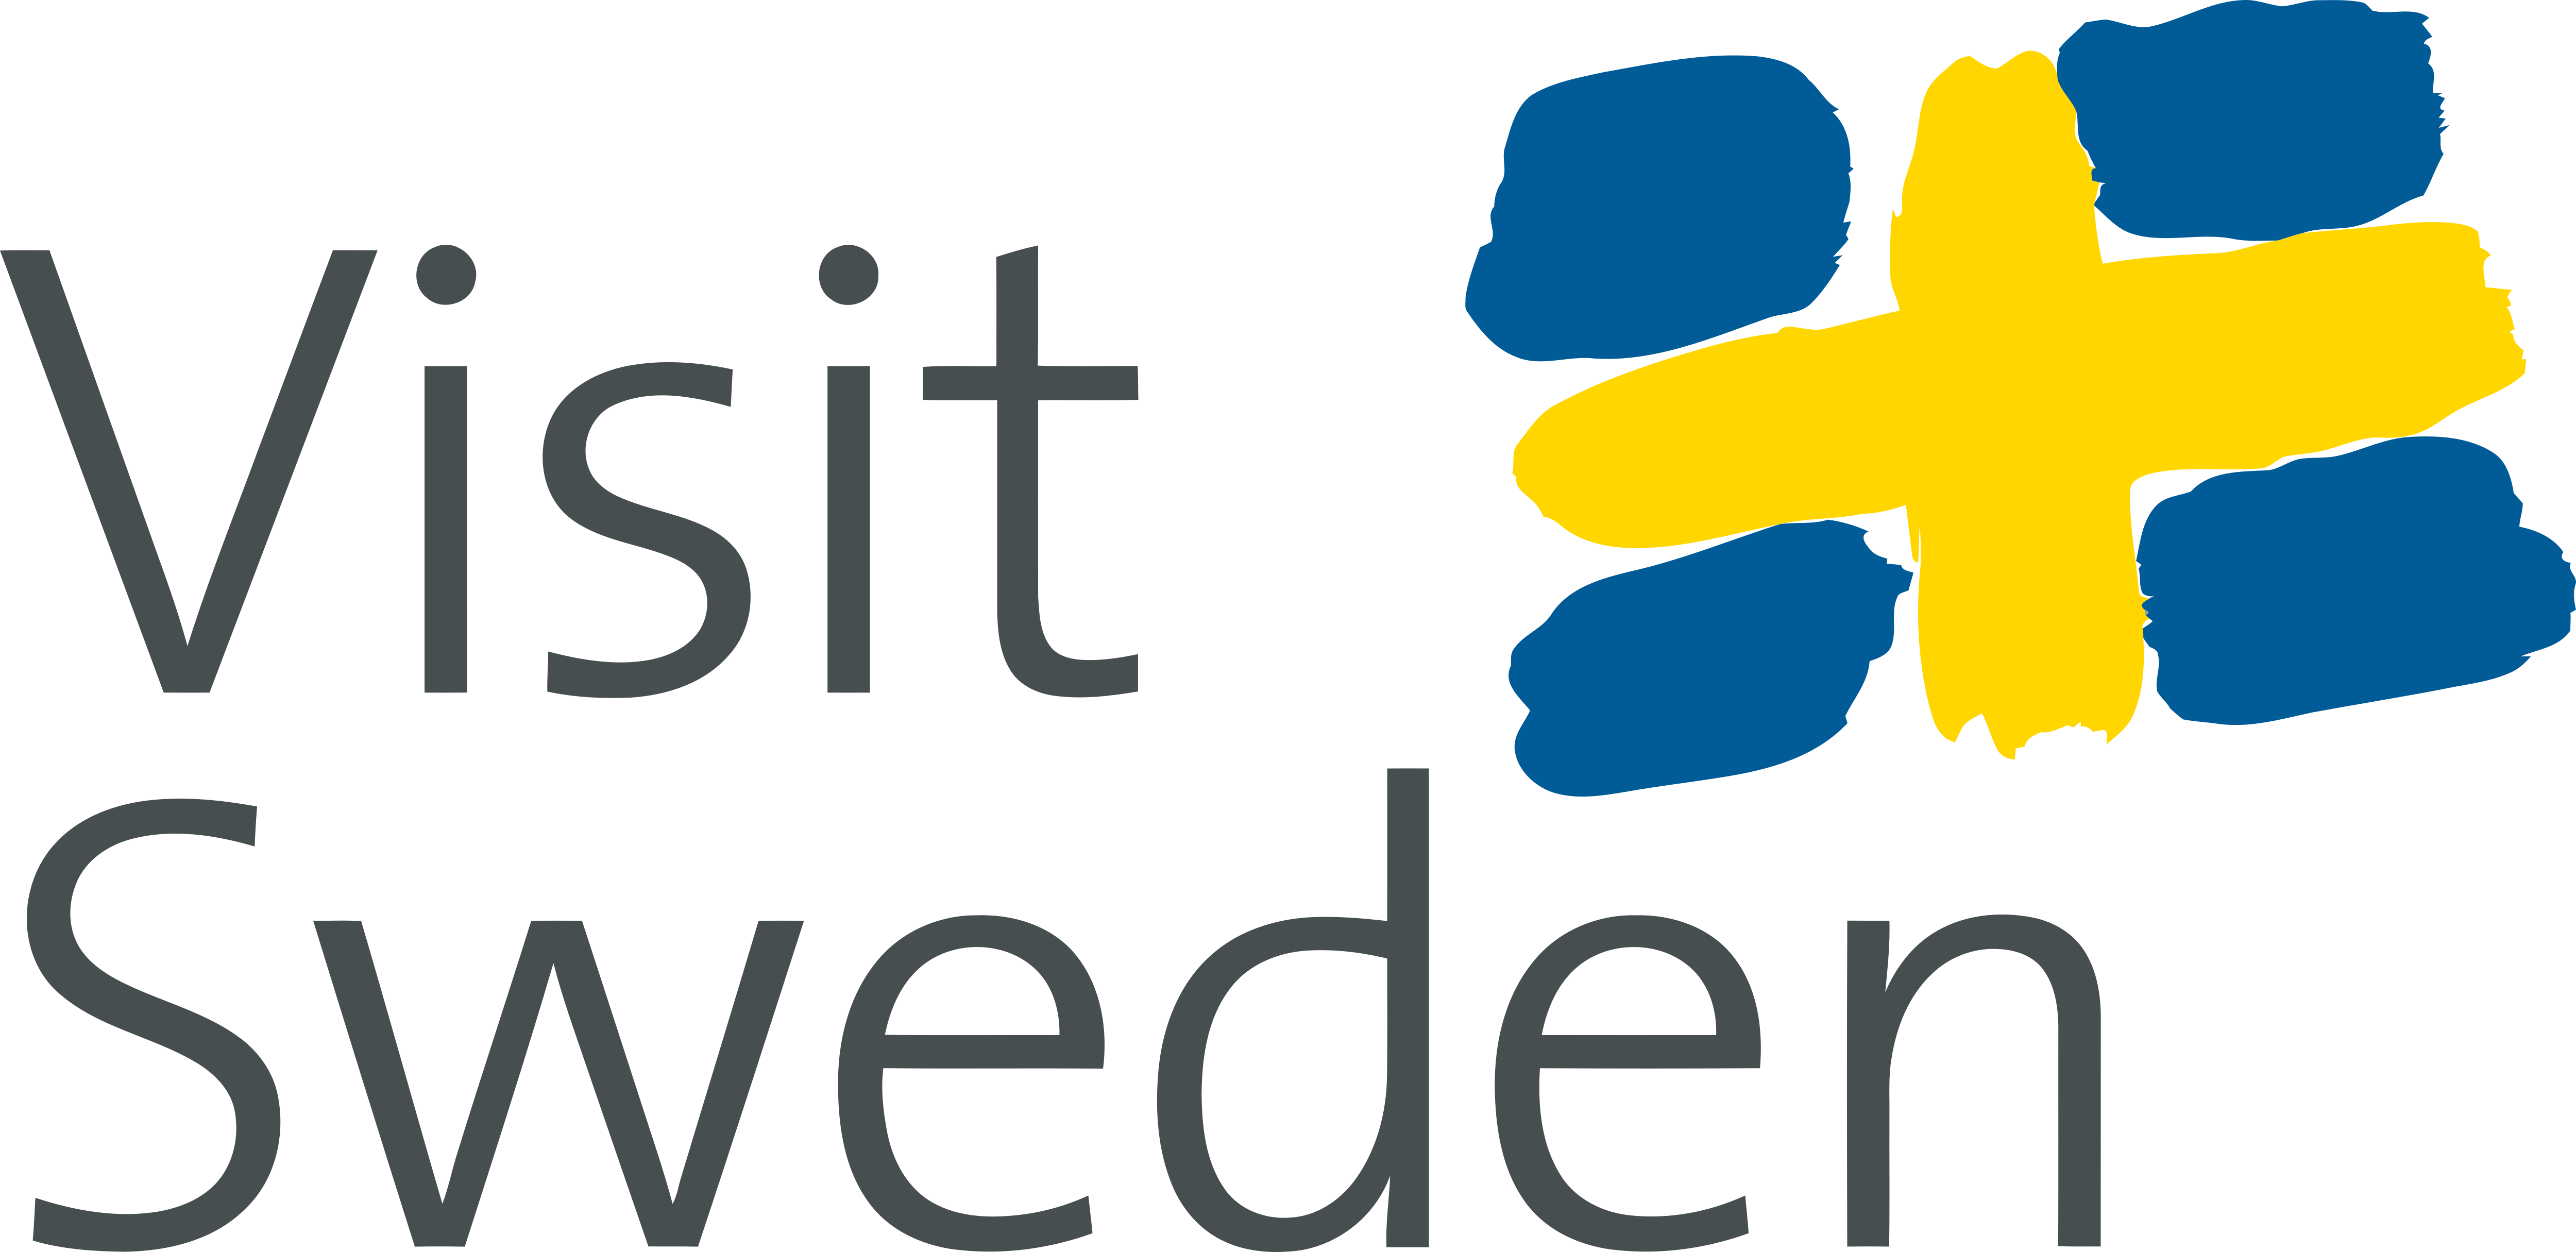 visit sweden campaign